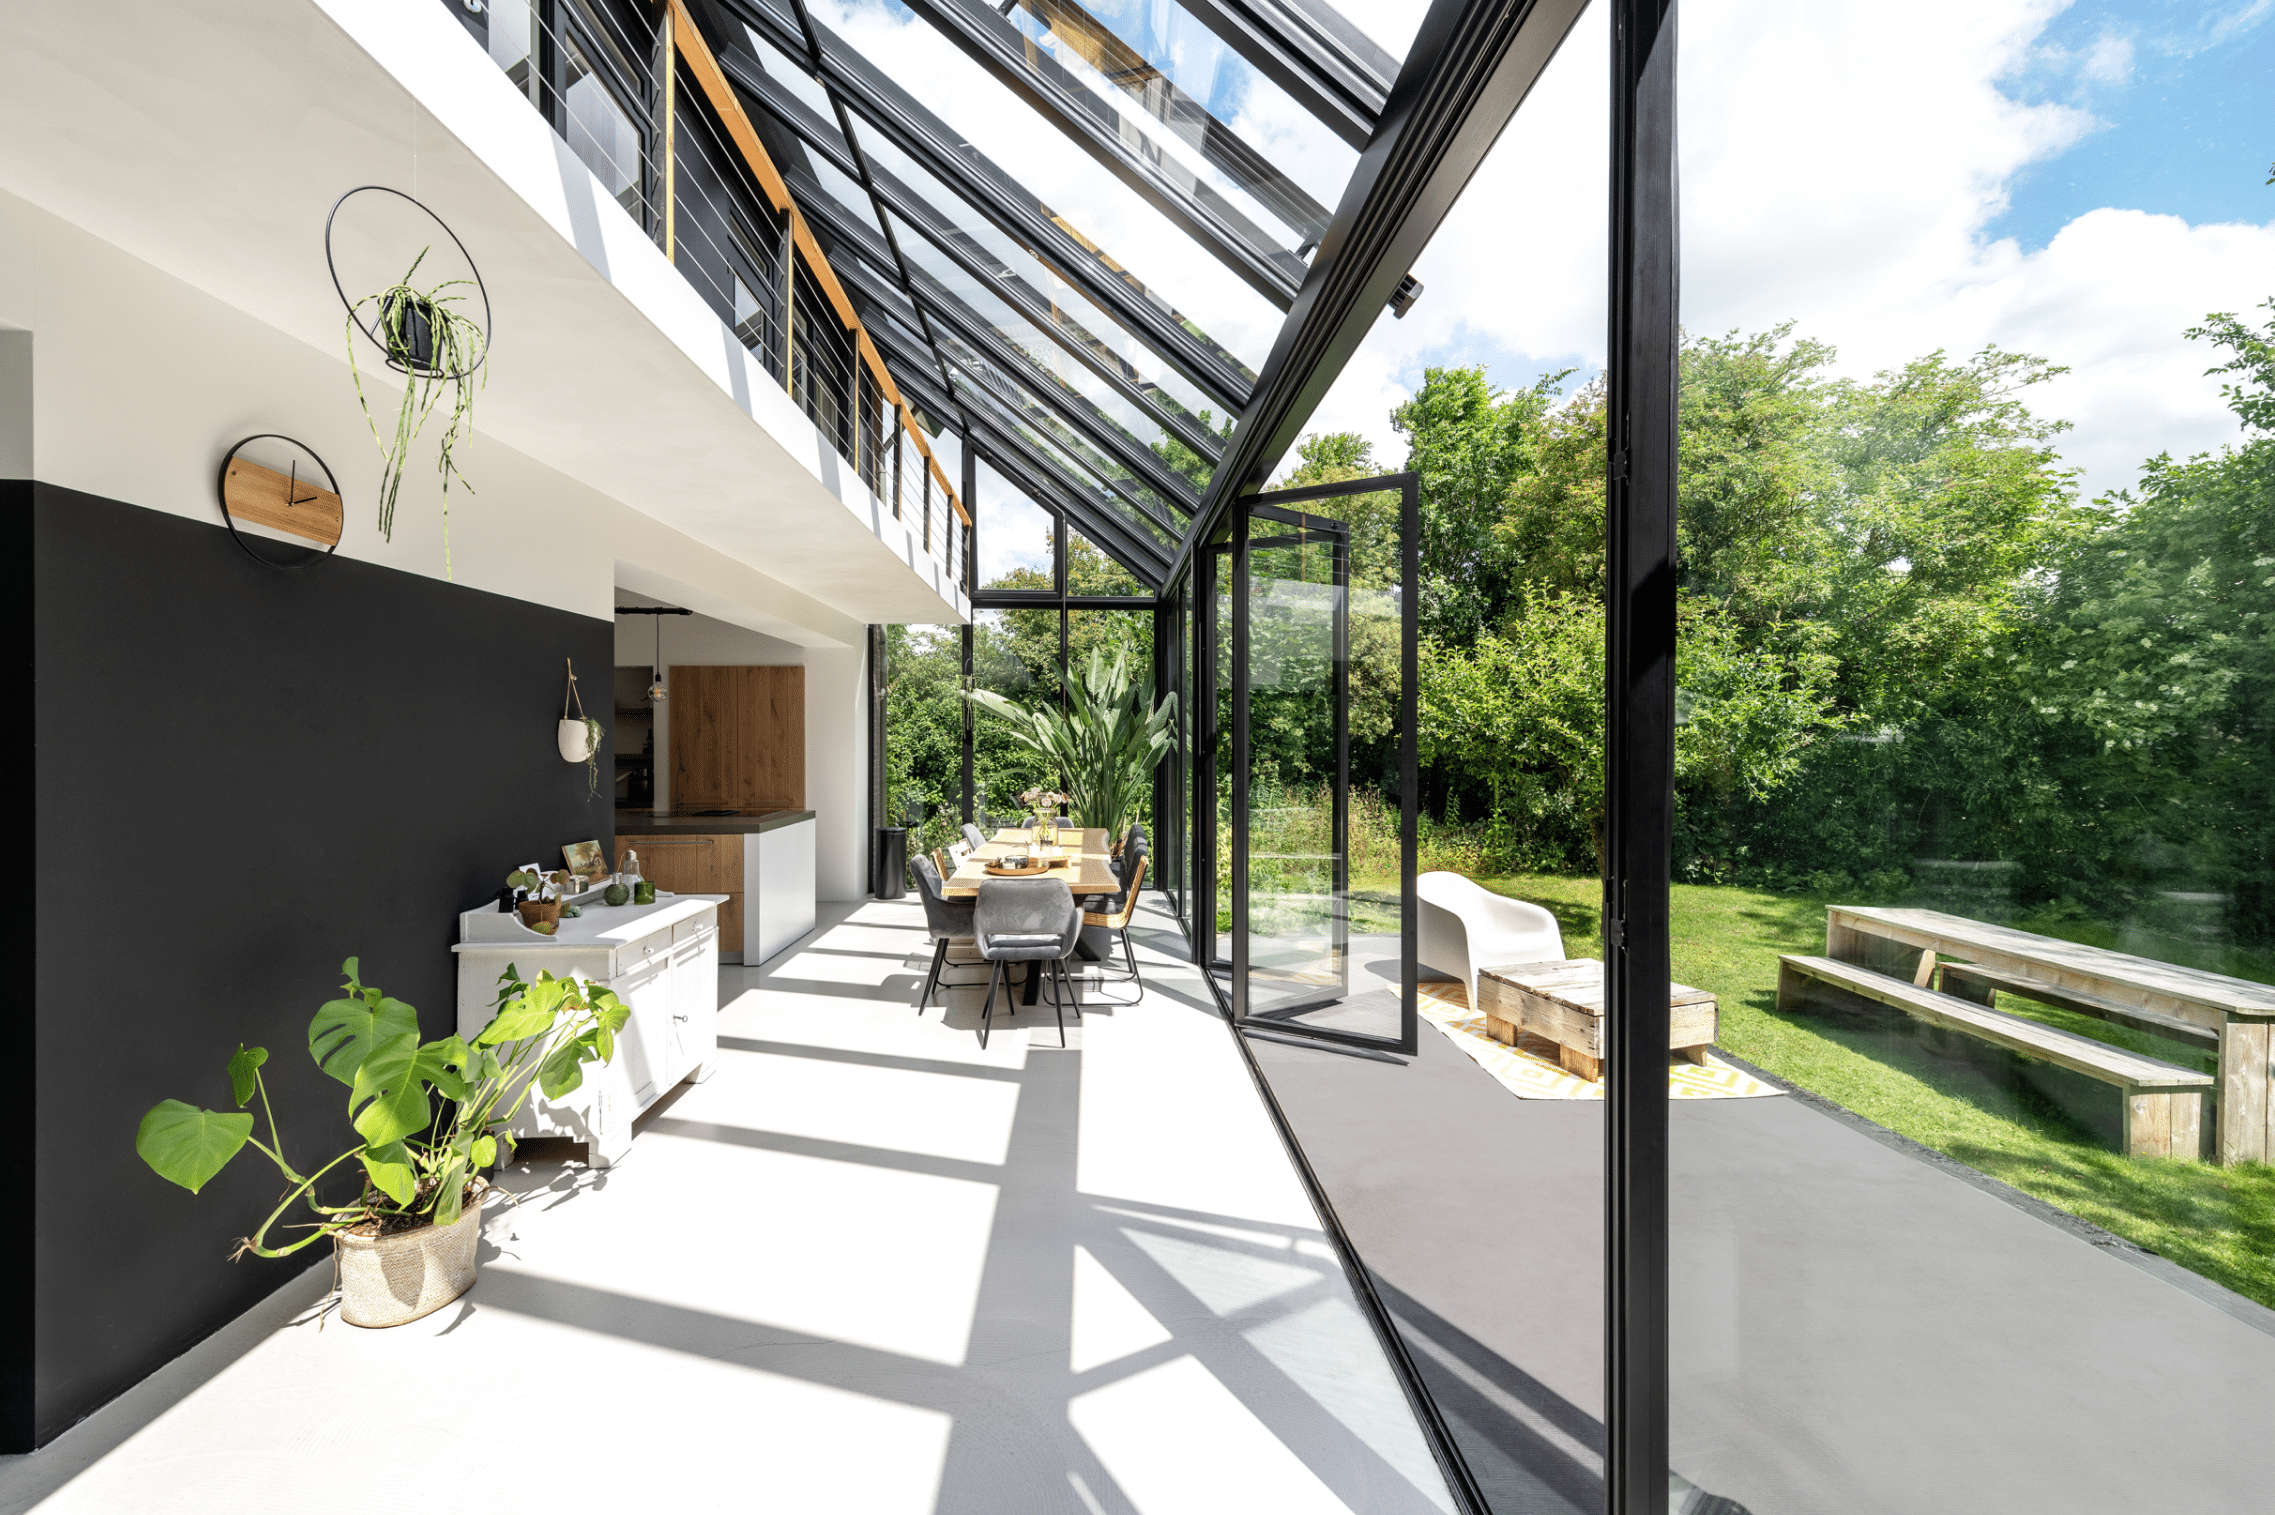 Einfamilienhaus mit zweistöckigem Wintergarten, welcher die Galerie integriert und einen Panoramablick in den Garten ermöglicht, ausgestattet mit teilweisem Glasdach und Glasfaltwänden von Solarlux.